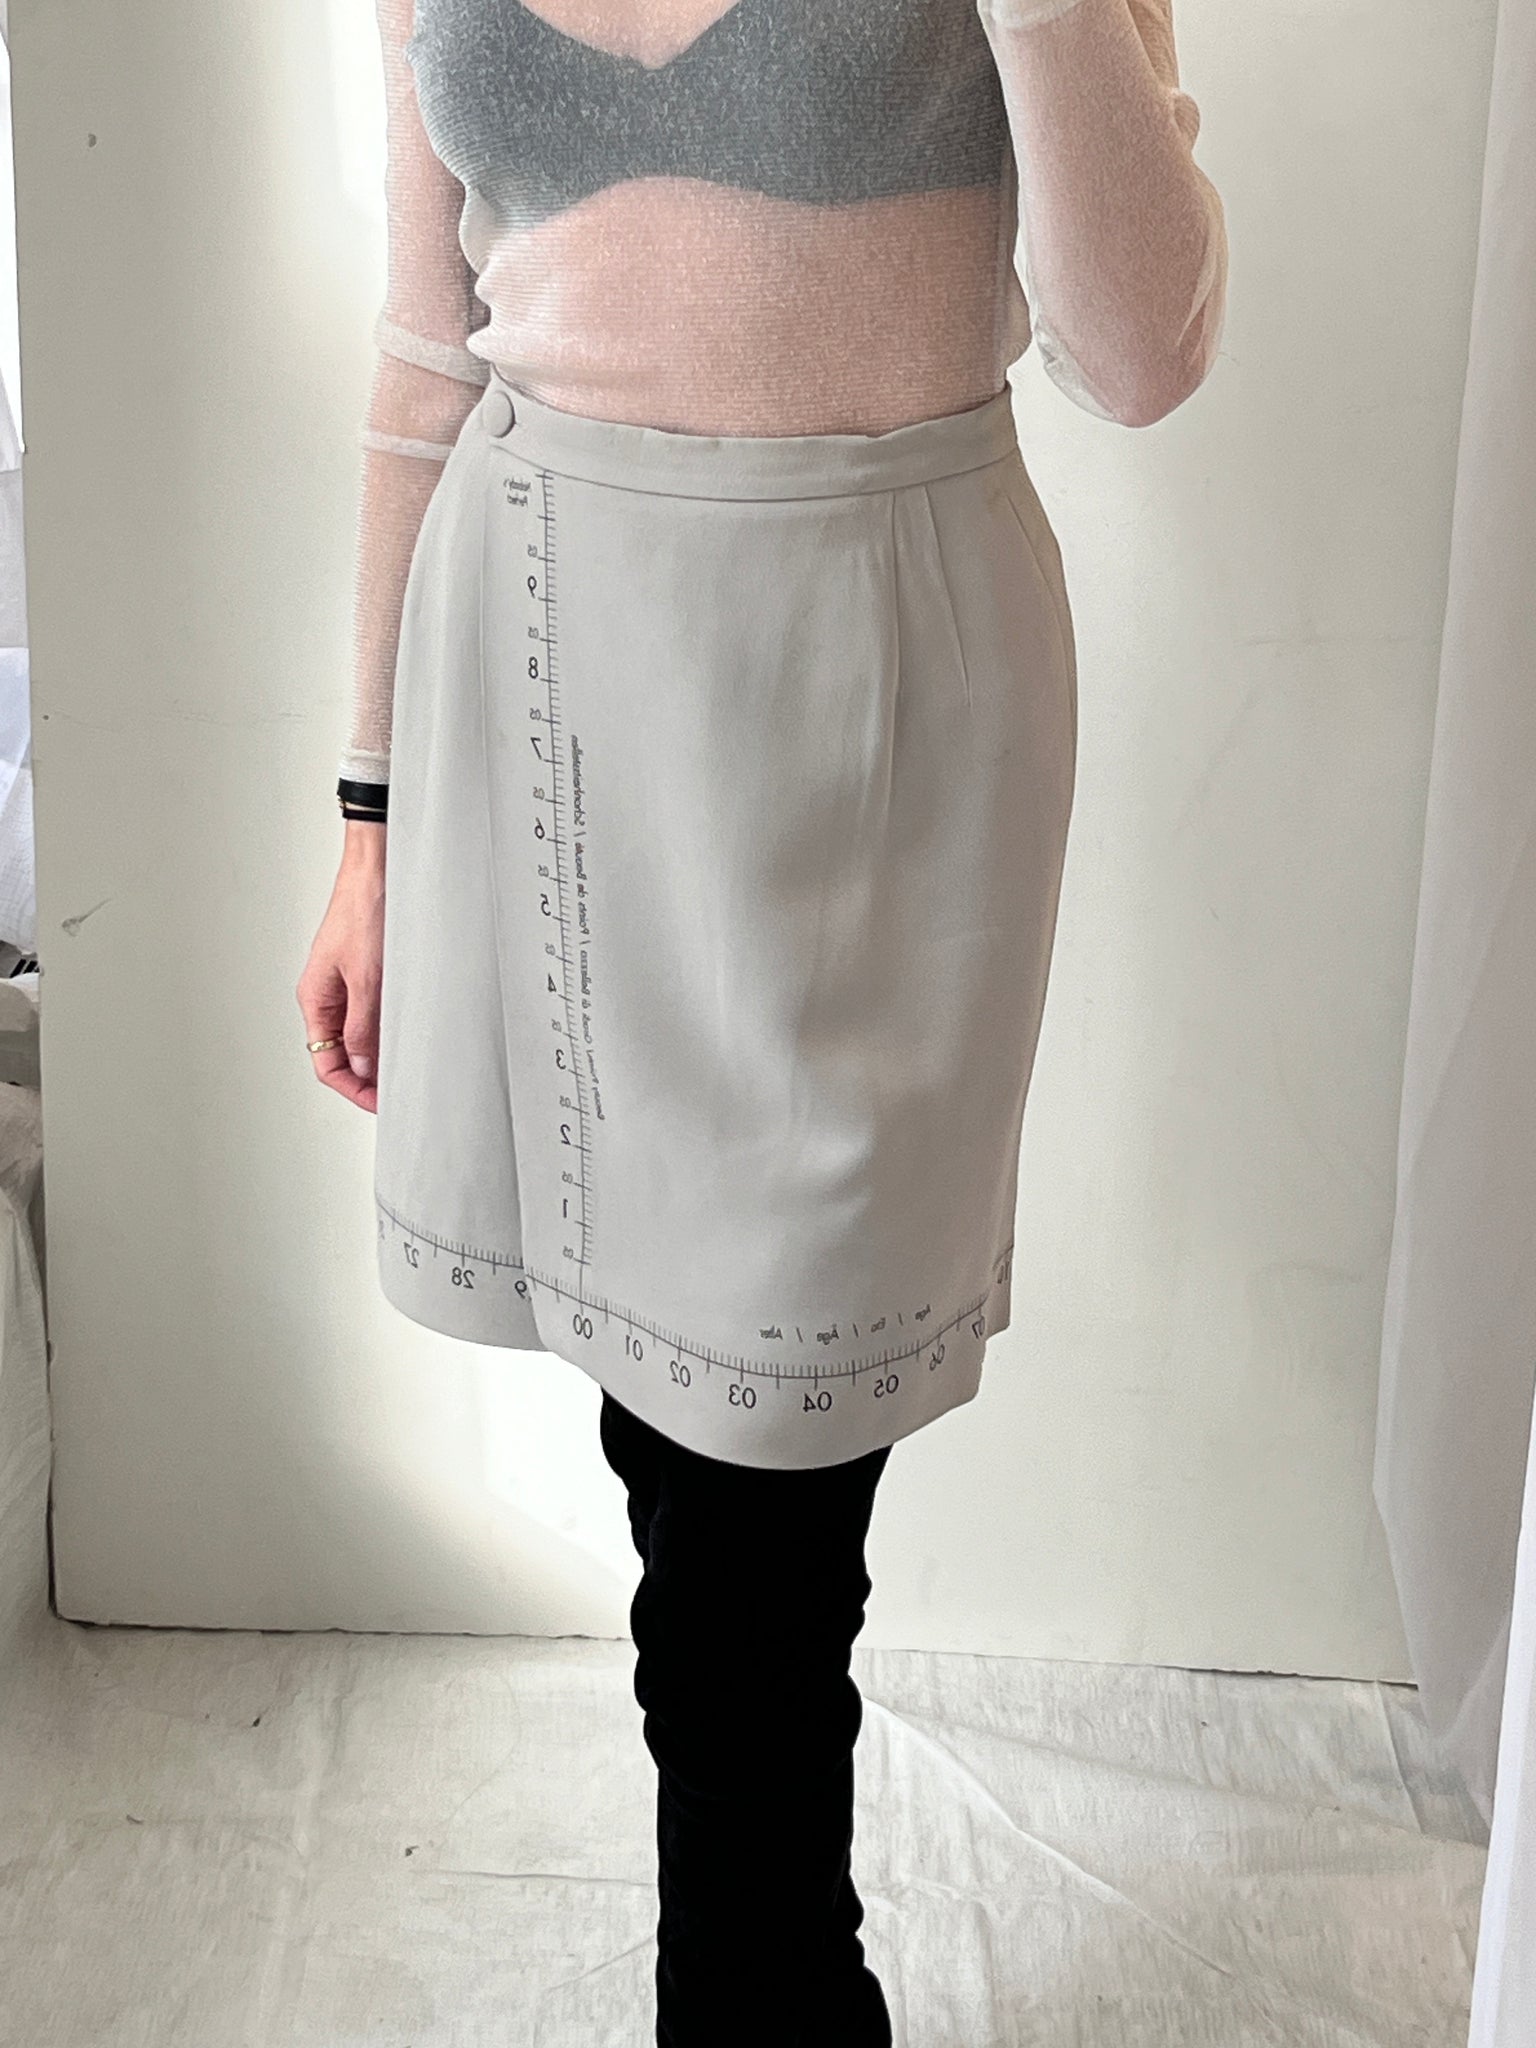 Moschino Cheap & Chic "Nobody's Perfect" Measurement Skirt